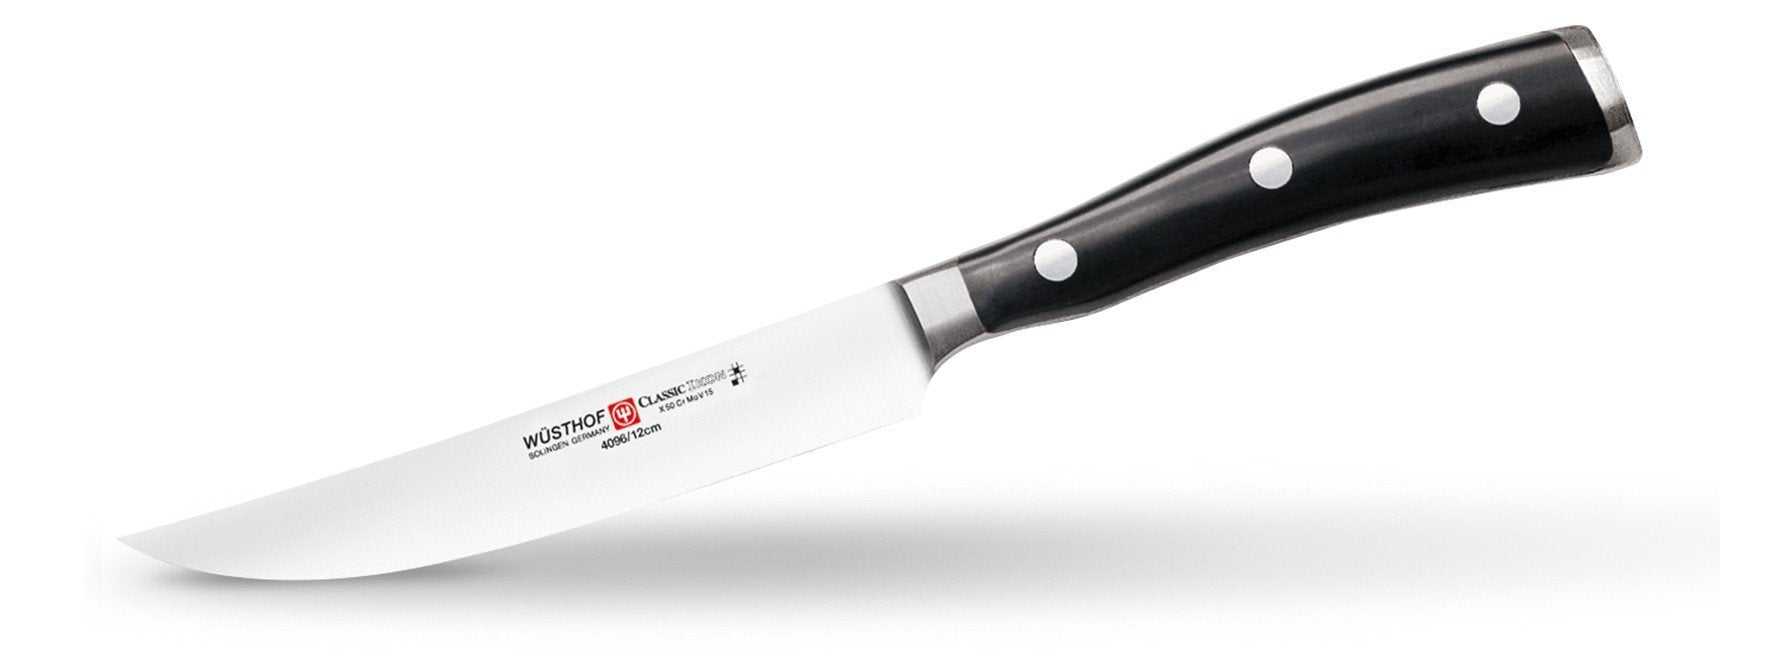 Wusthof Classic Ikon - Steak Knife 4 1/2"